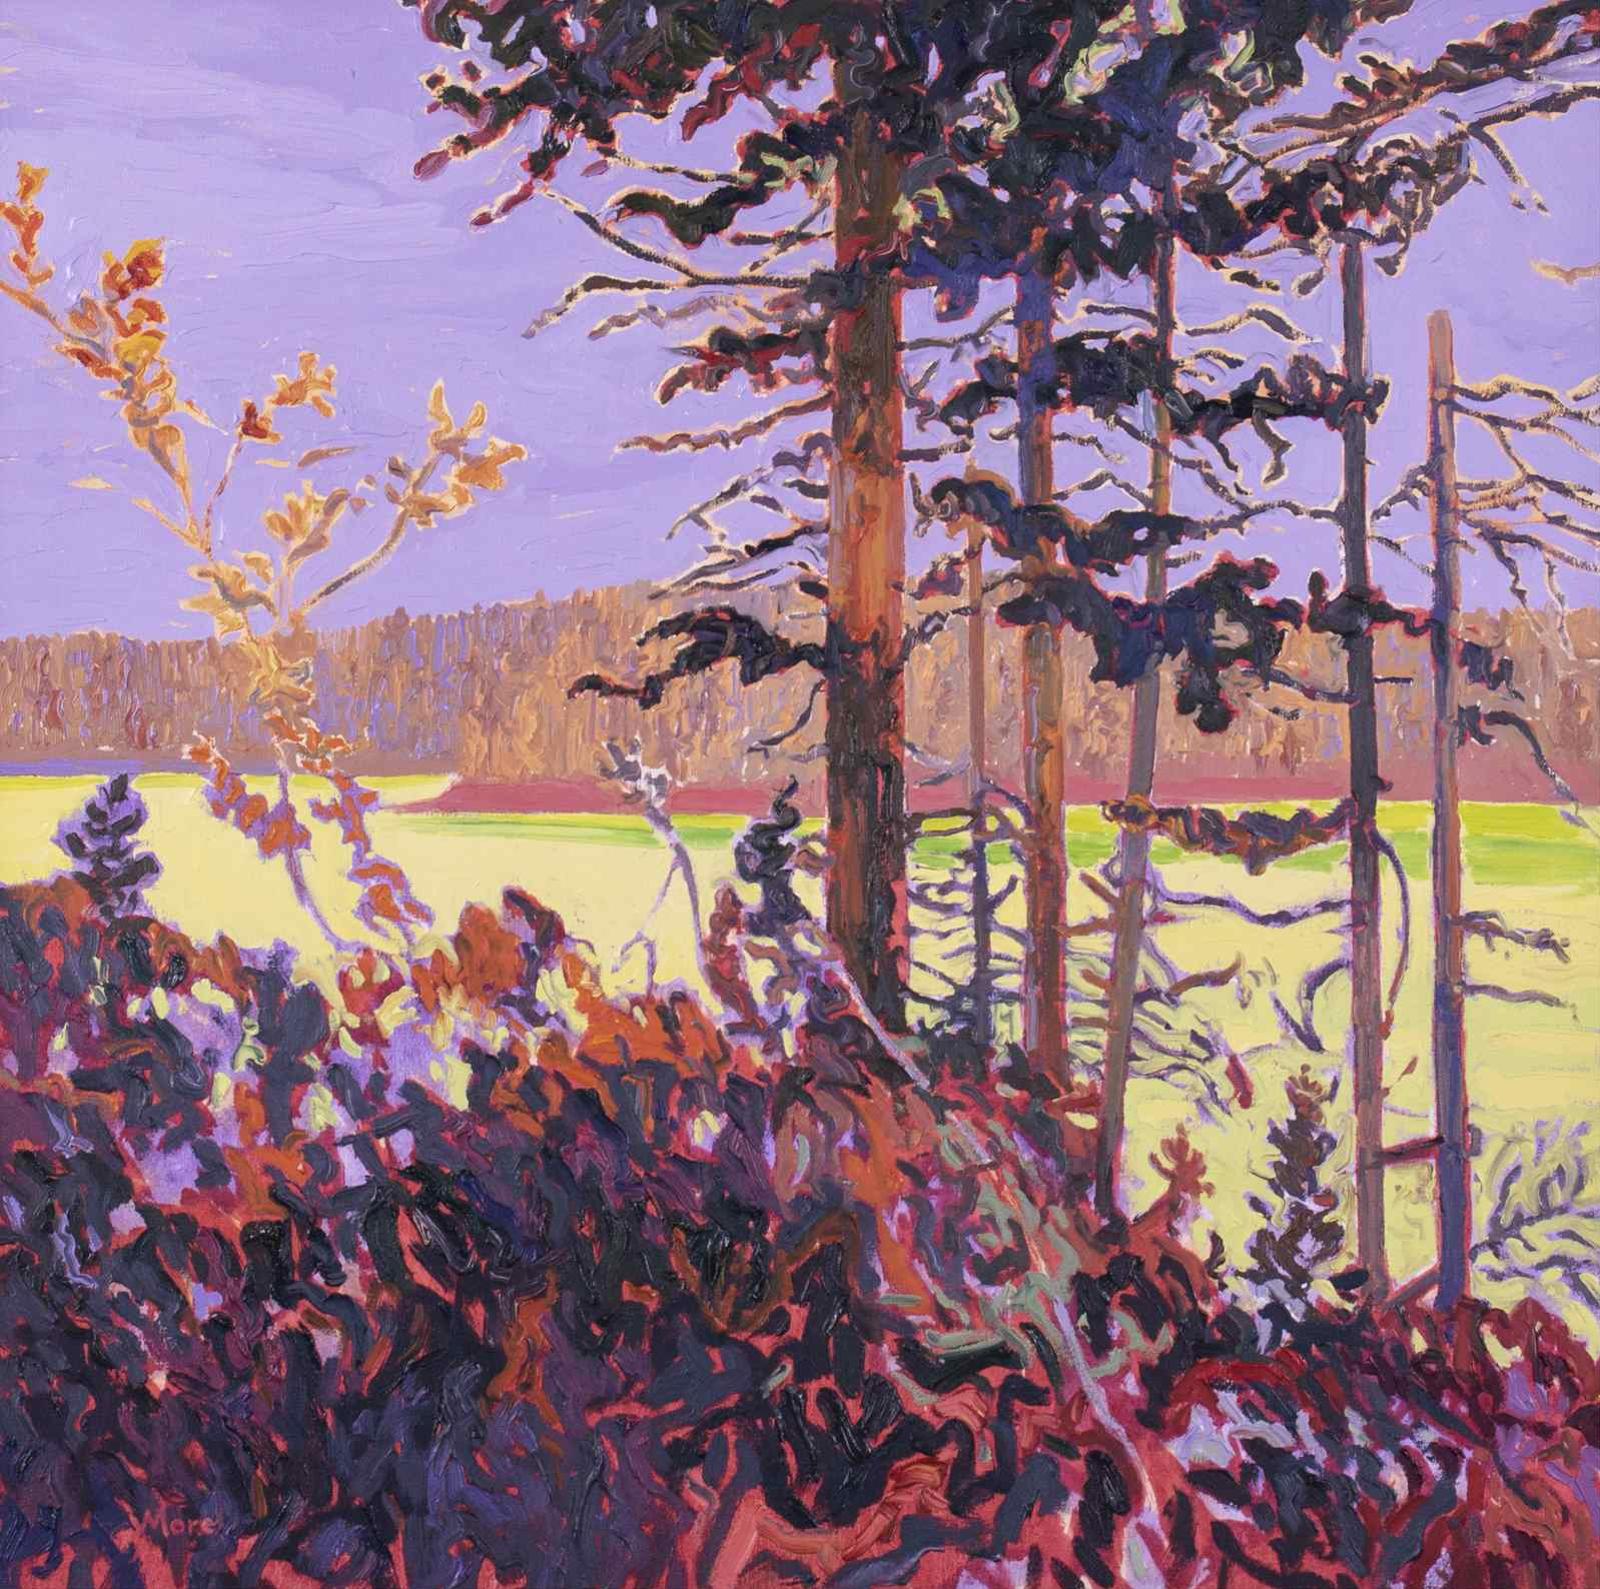 David John More (1947) - Falling Forest, Glowing Lake; 1989